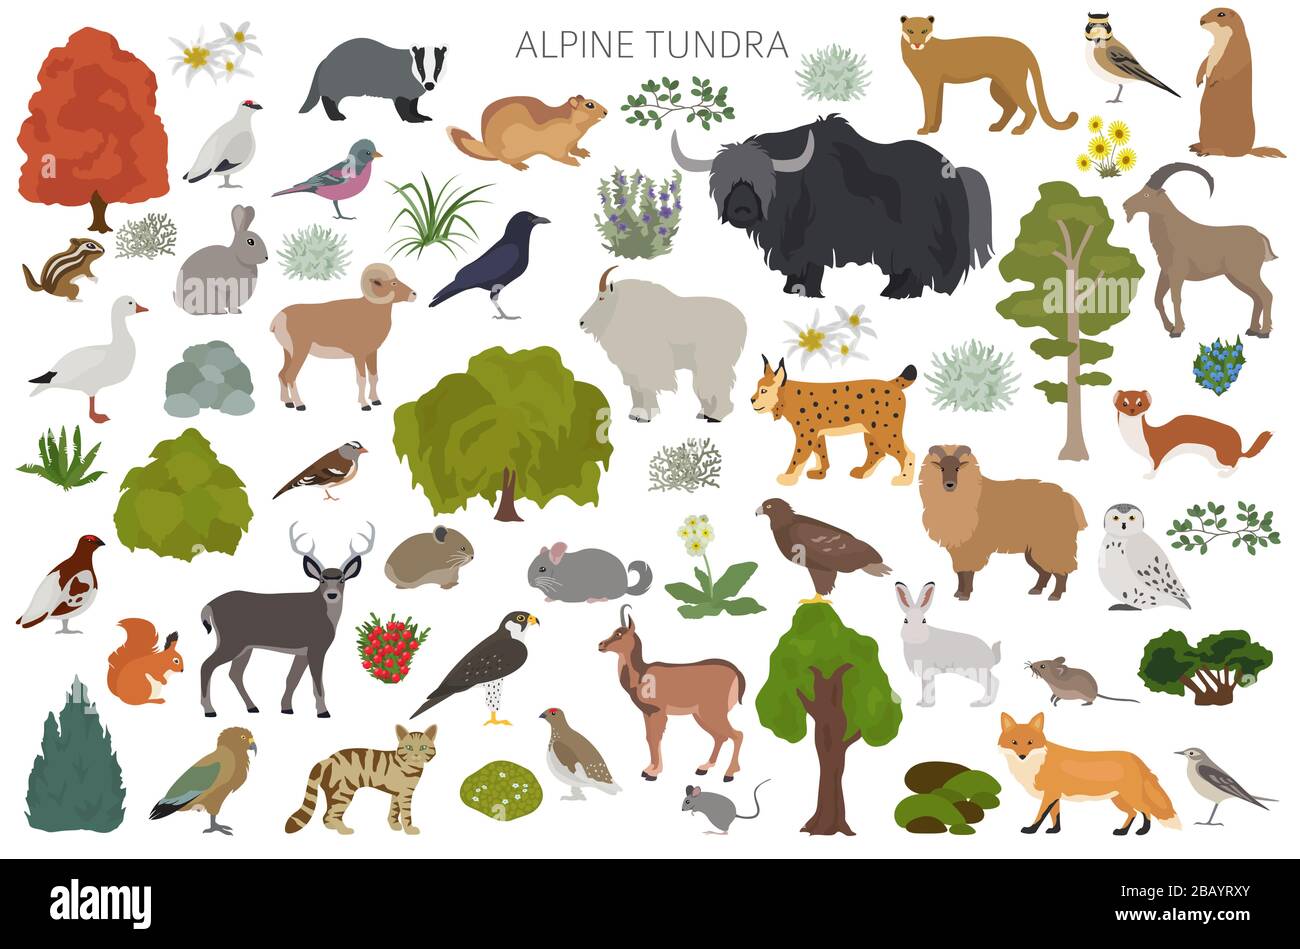 Apine Tundra biome, natürliche Region Infografik. Weltkarte für terrestrisches Ökosystem. Tiere, Vögel und Pflanzen entwerfen Set. Vektorgrafiken Stock Vektor